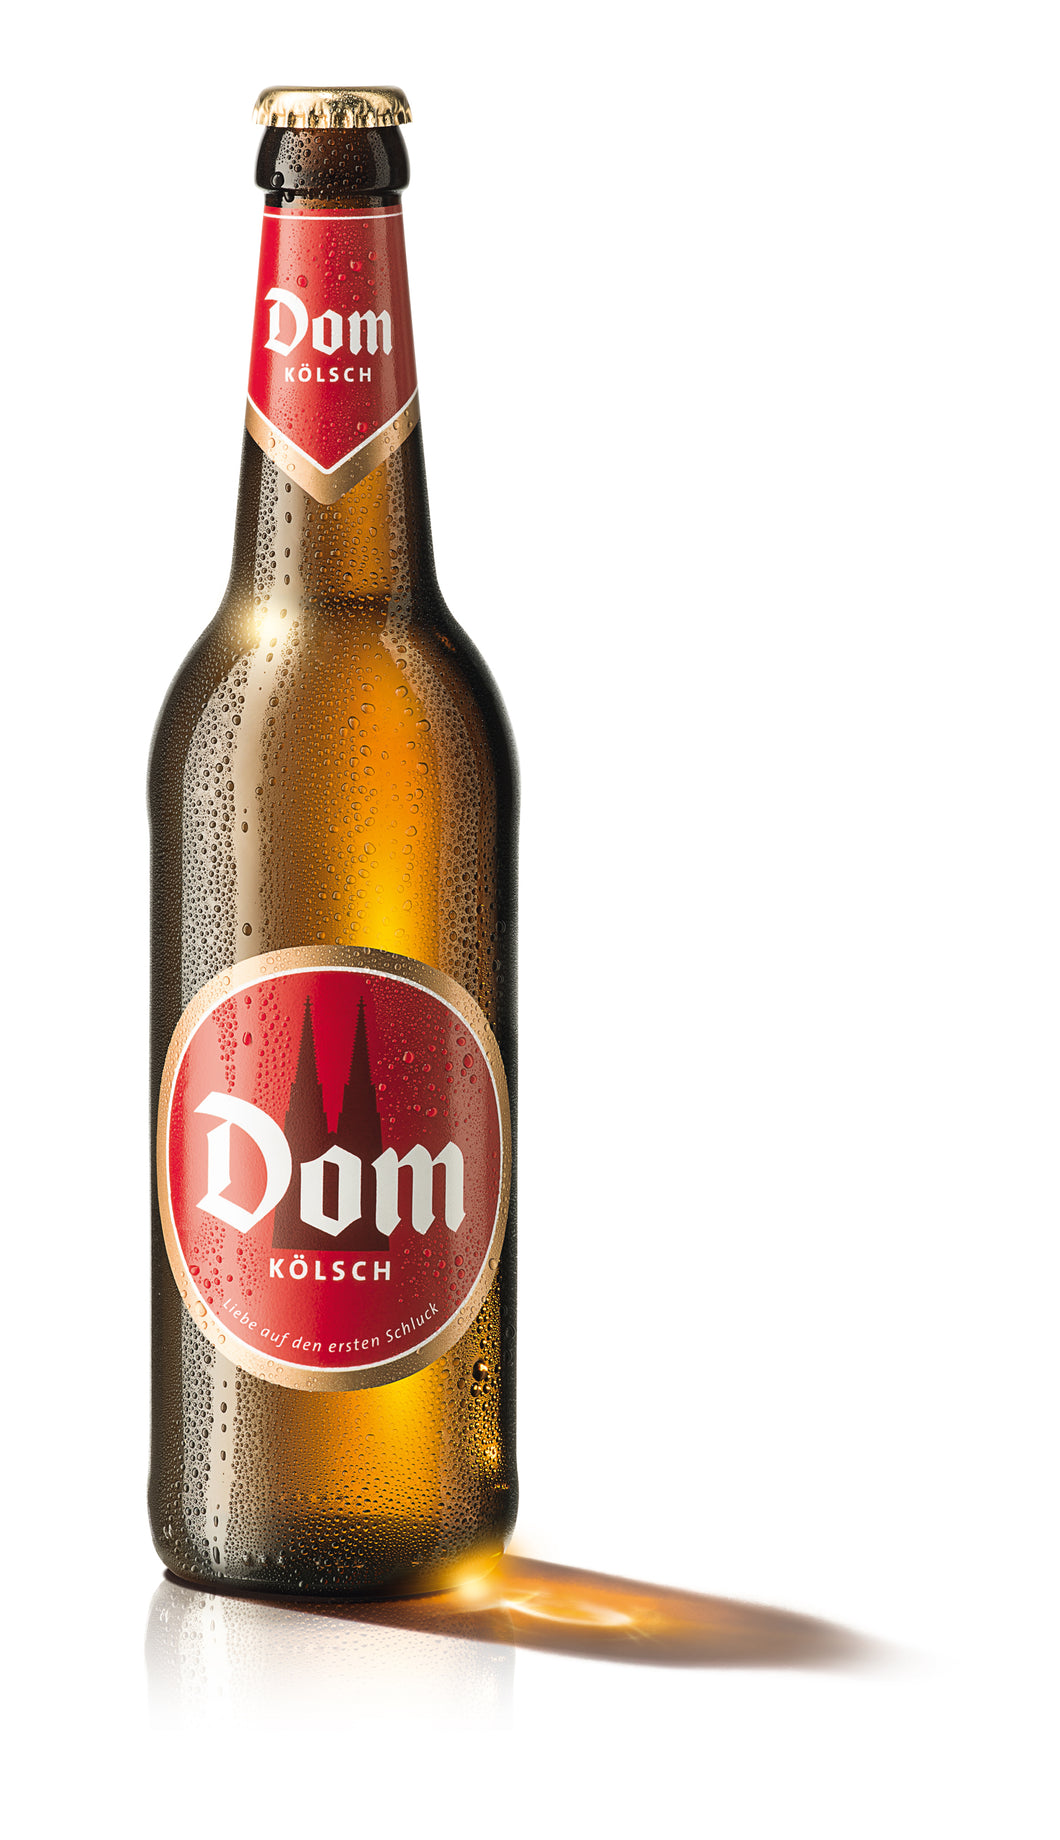 Dom Kölsch - Dom Kölsch Vertriebs - Kölsch, 4.8%, 500ml Bottle